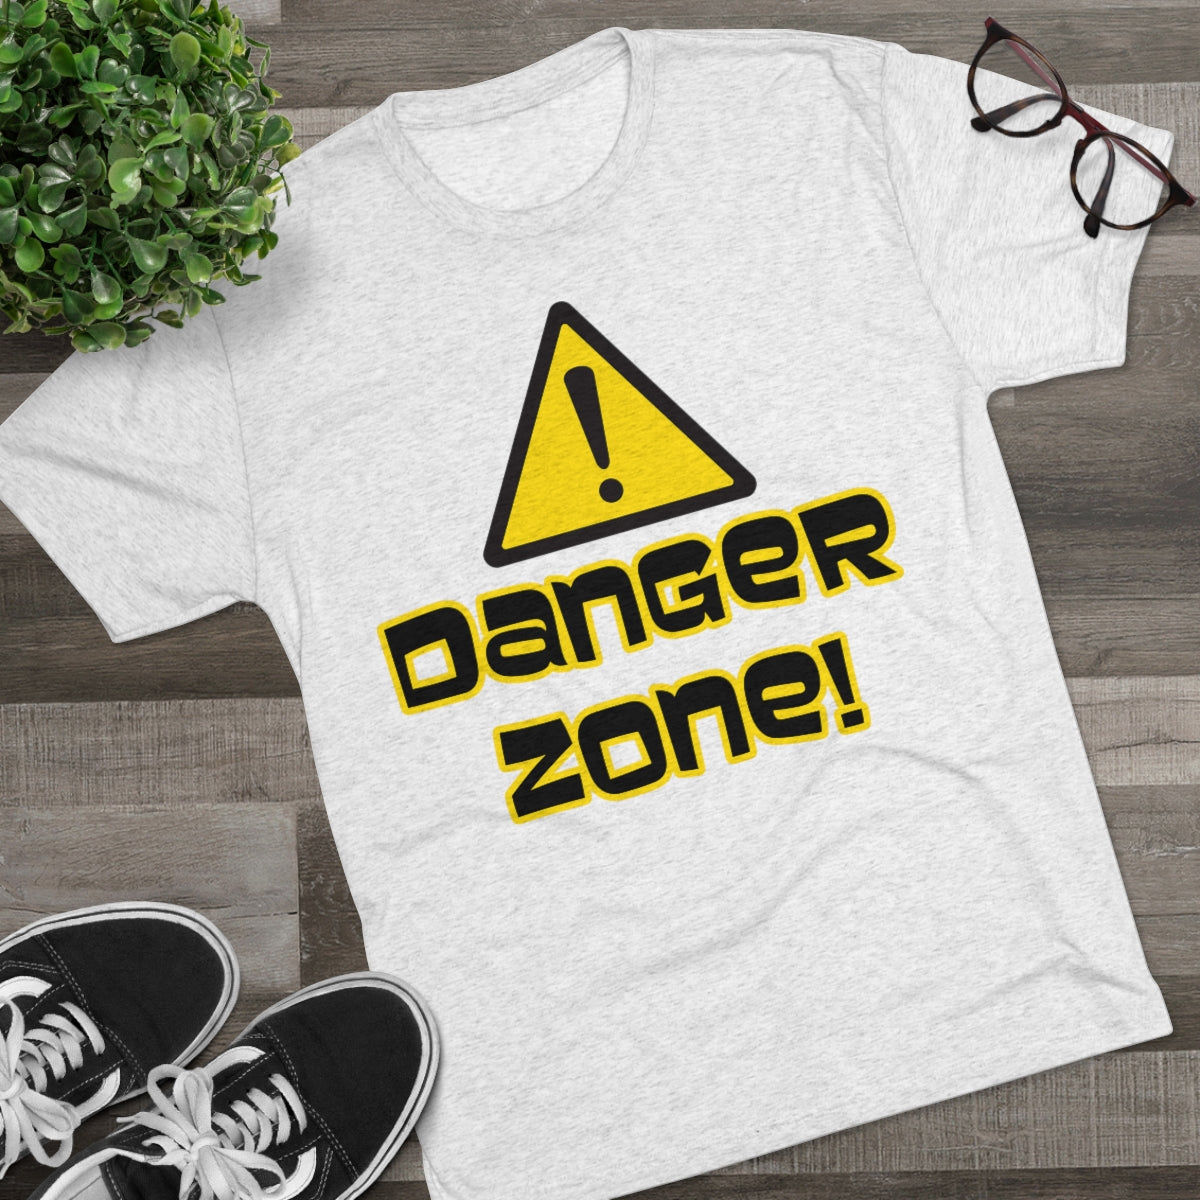 Danger Zone -Archer themed- MenBrainStorm Tees